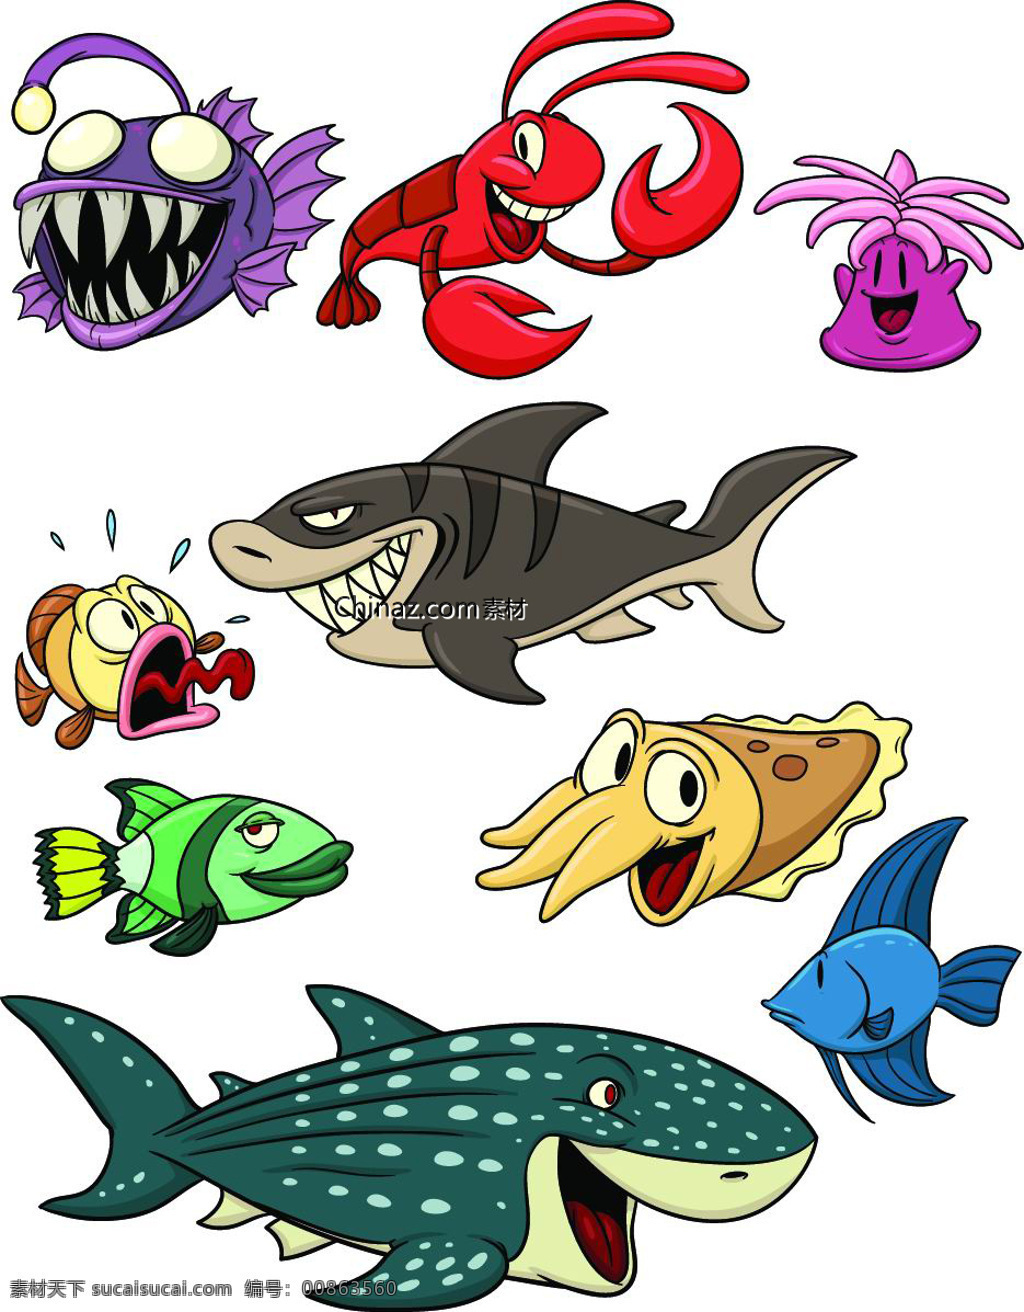 卡通 海底 动物 矢量 海底动物 矢量素材 鱼 鲨鱼 章鱼 八爪鱼 热带鱼 虾 白色